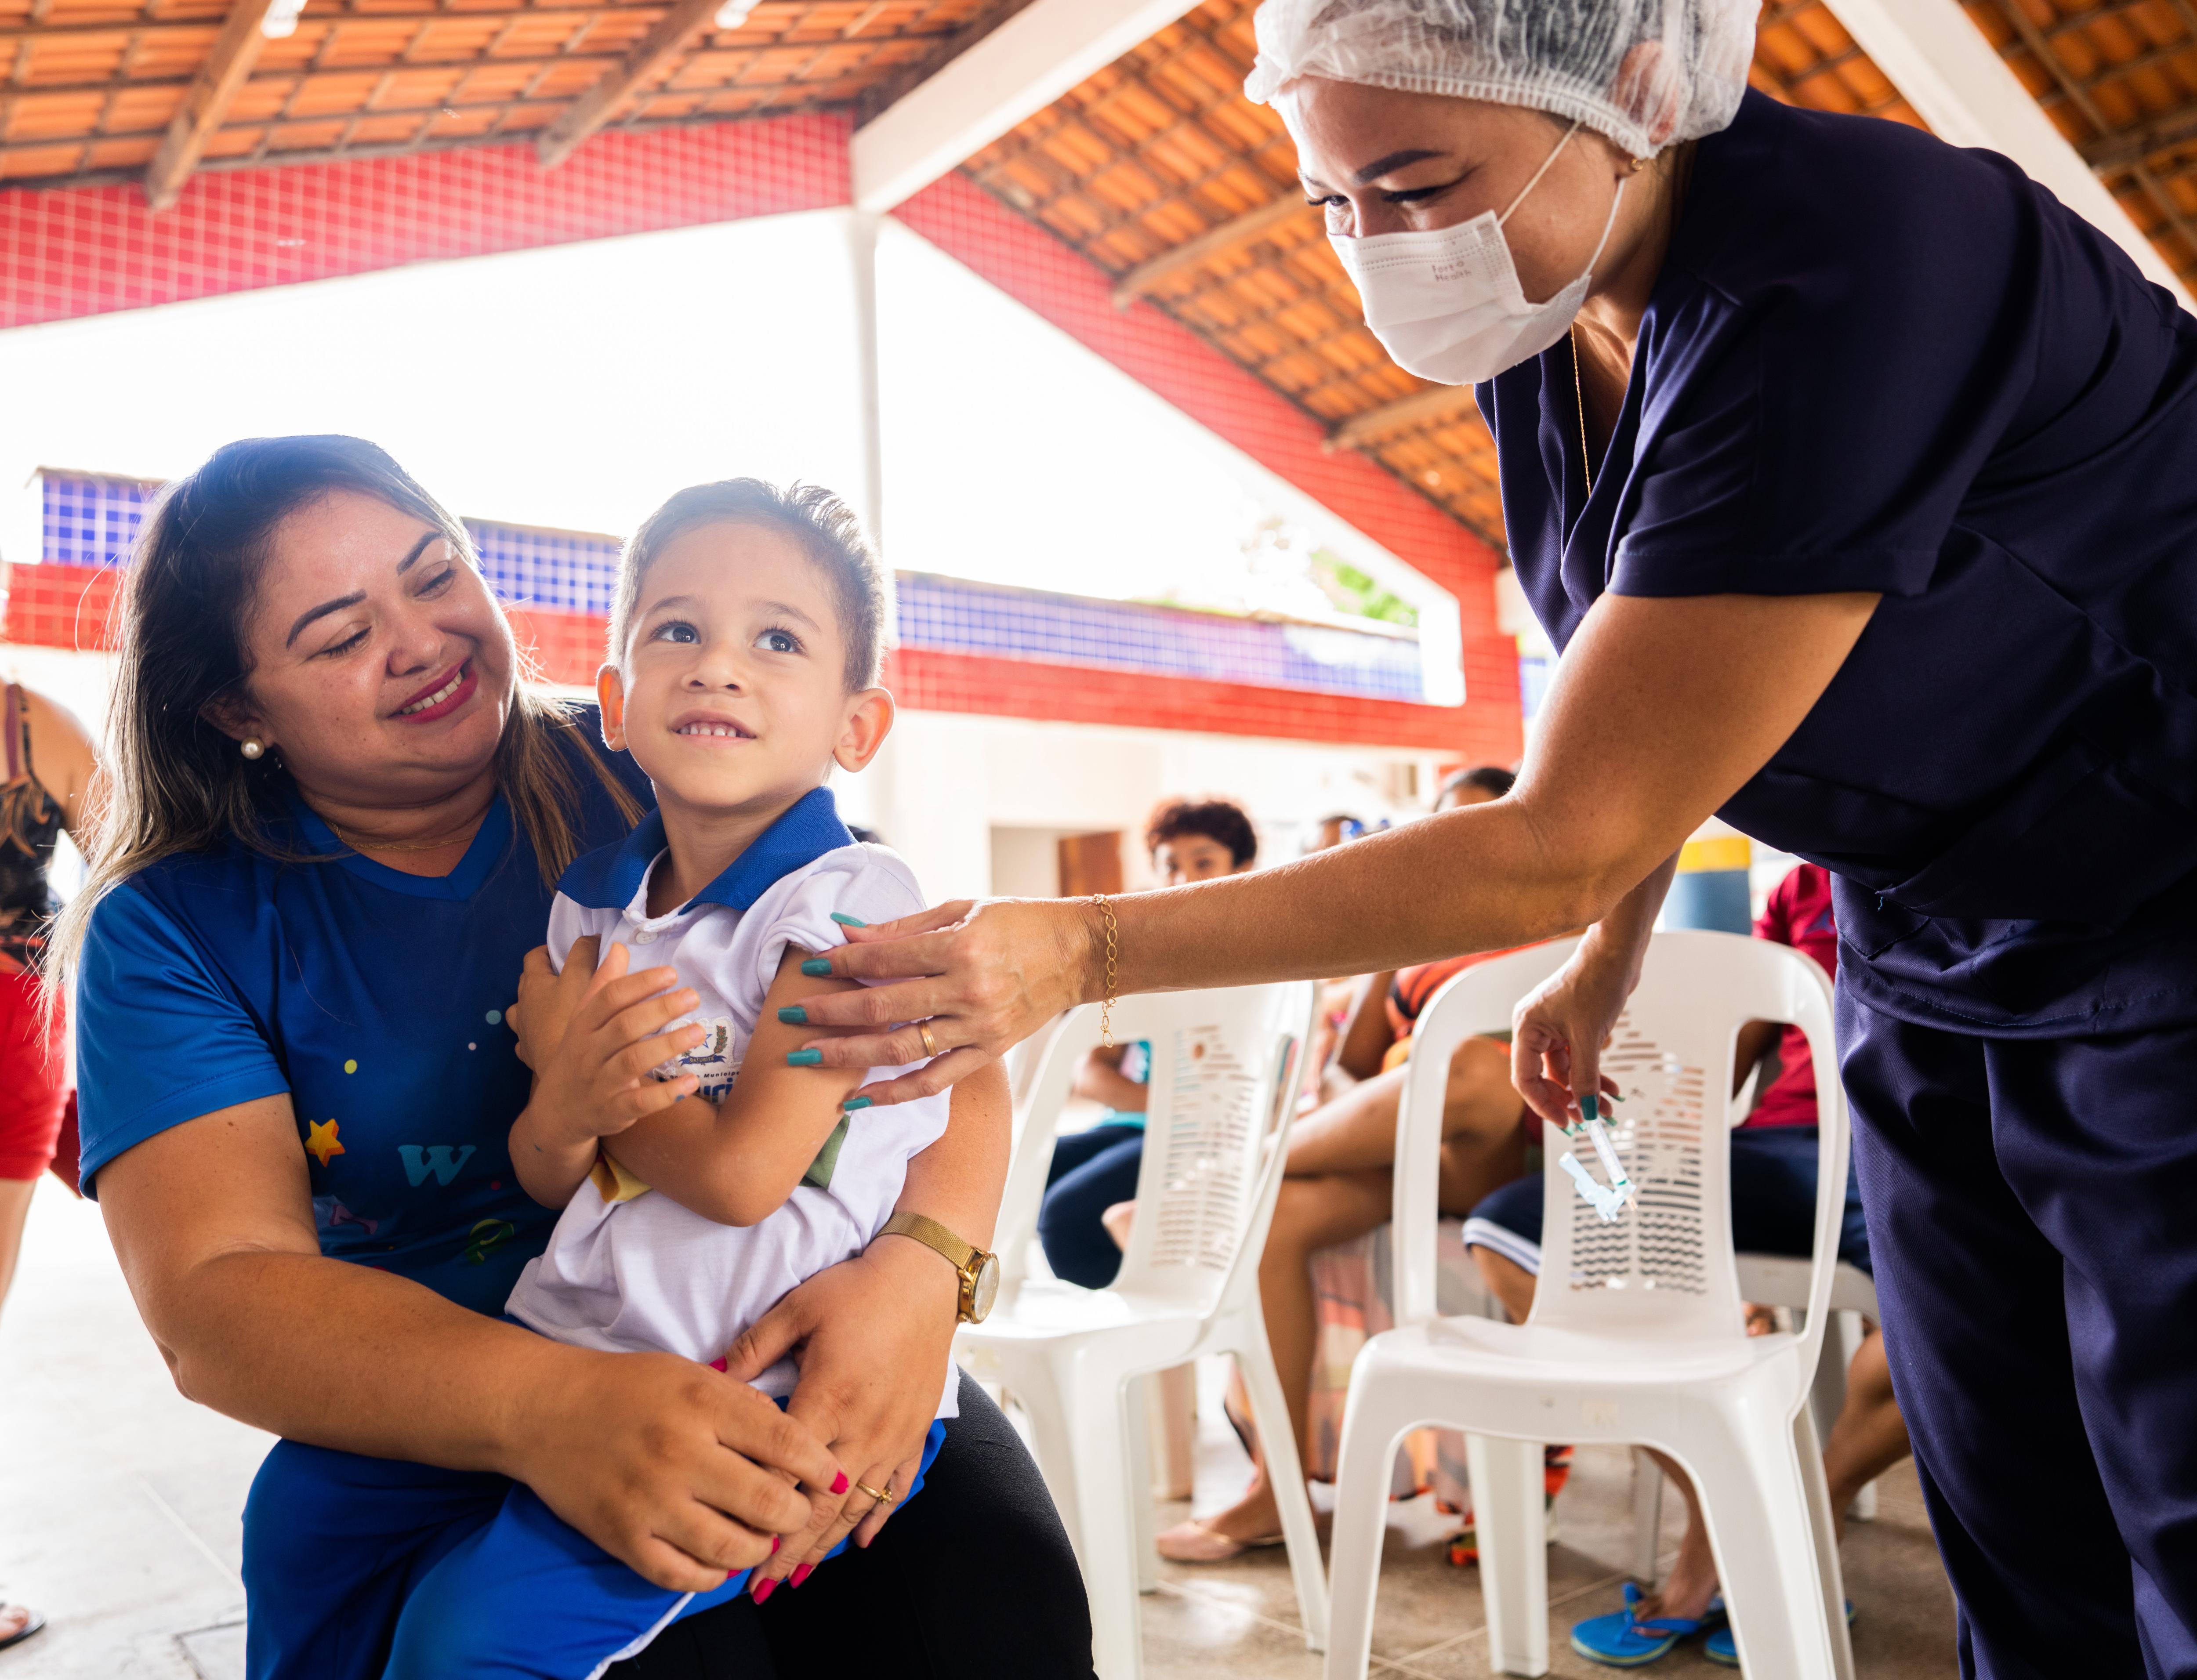 A Samuel le faltaban tres vacunas. El niño de cuatro años sonríe tras recibir una vacuna contra la fiebre amarilla que le ha suministrado la enfermera Dynnhyfer de Souza en el Centro de Educación Infantil Rocilda Germano Arruda de Baturité, en el estado brasileño de Ceará.